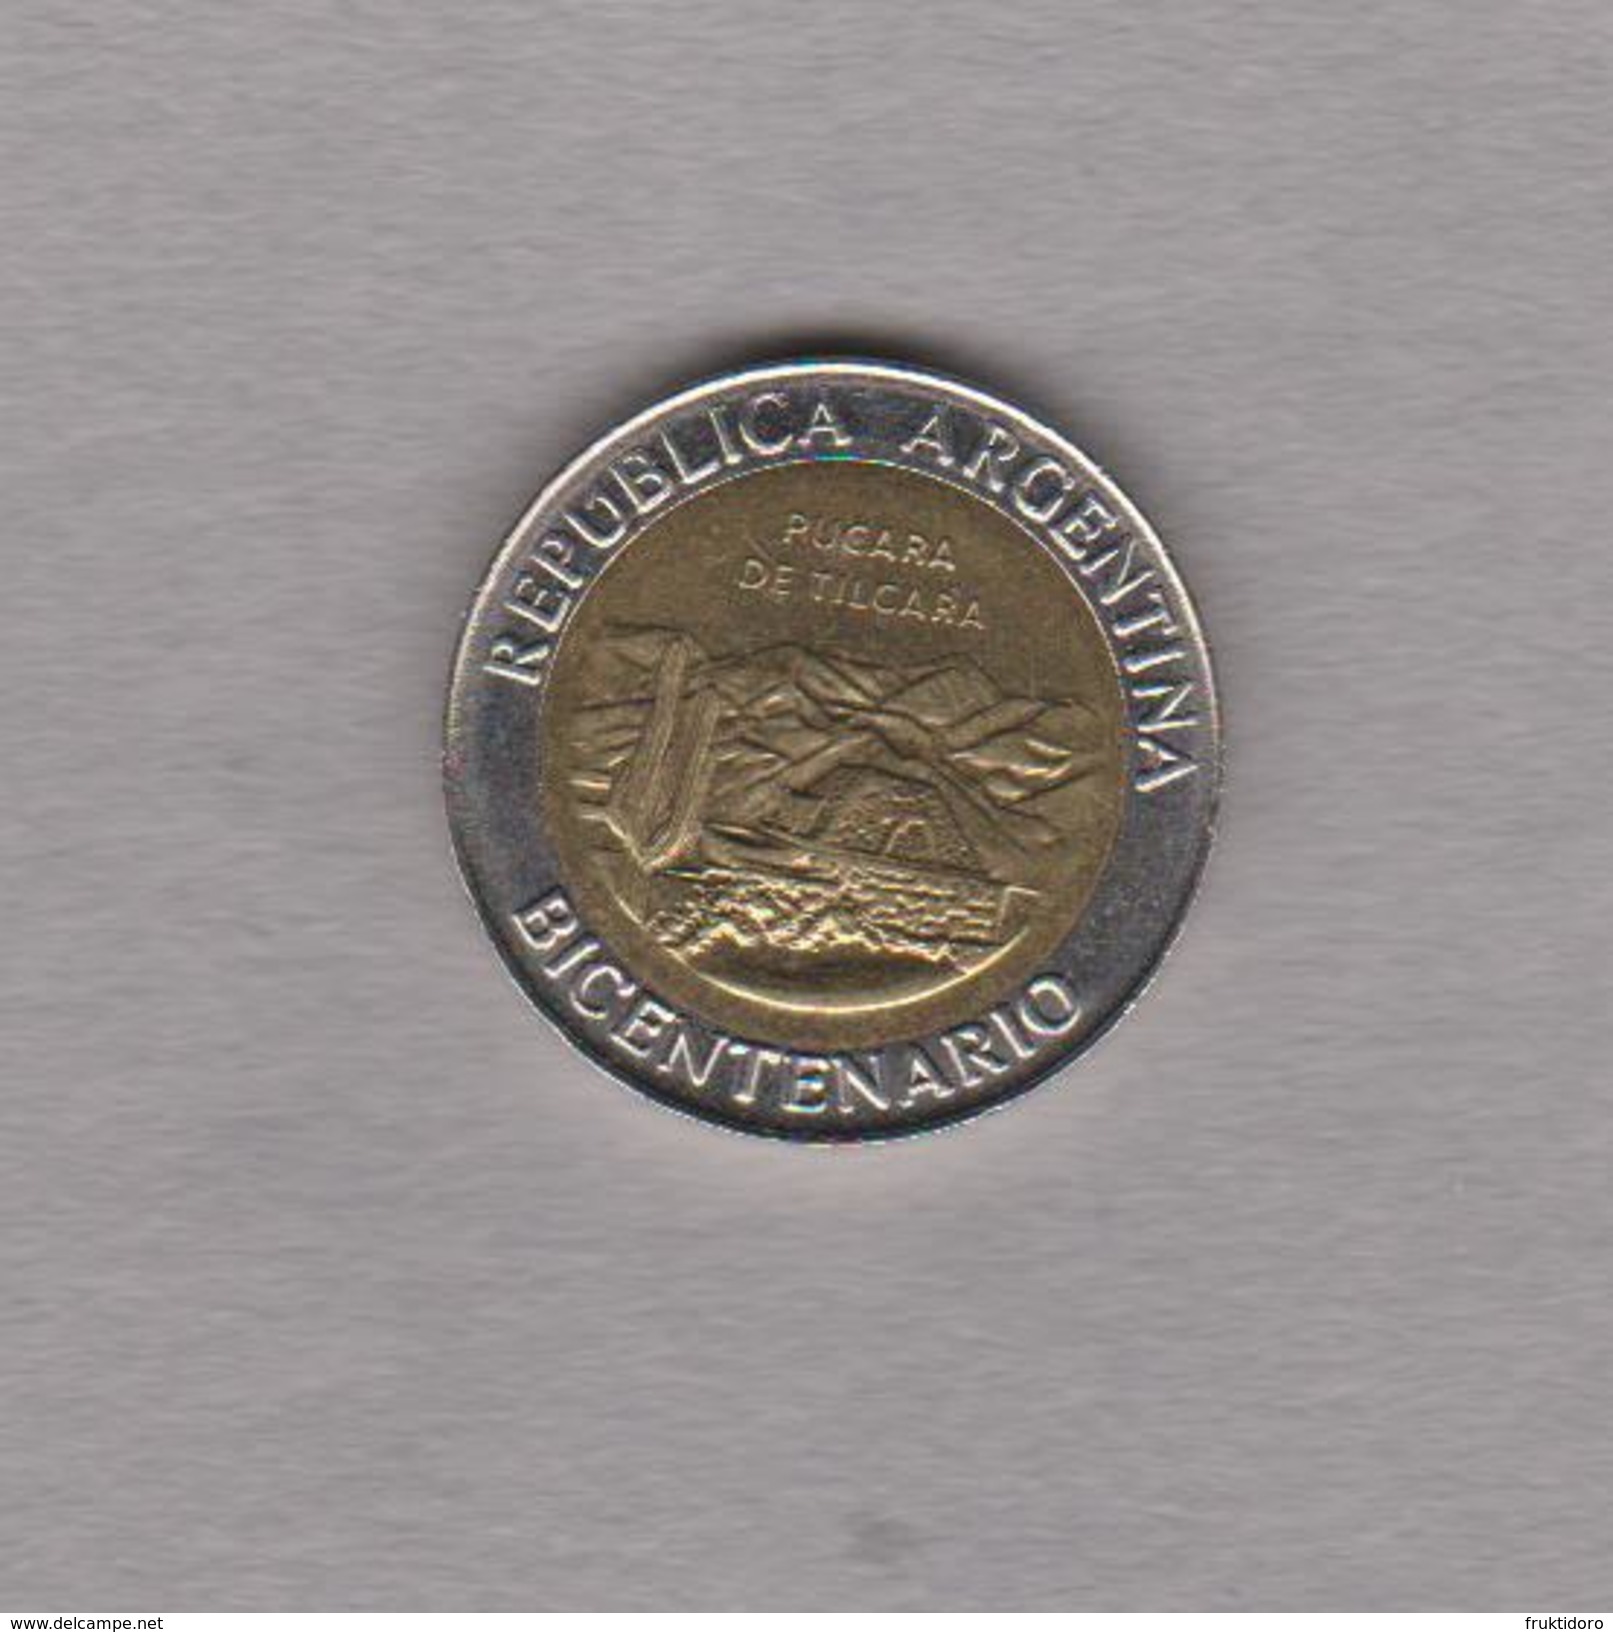 Coin Argentina 2010 1 Peso - Commemorative Coin - Bicentenary - Pucara De Tilcara - Argentina